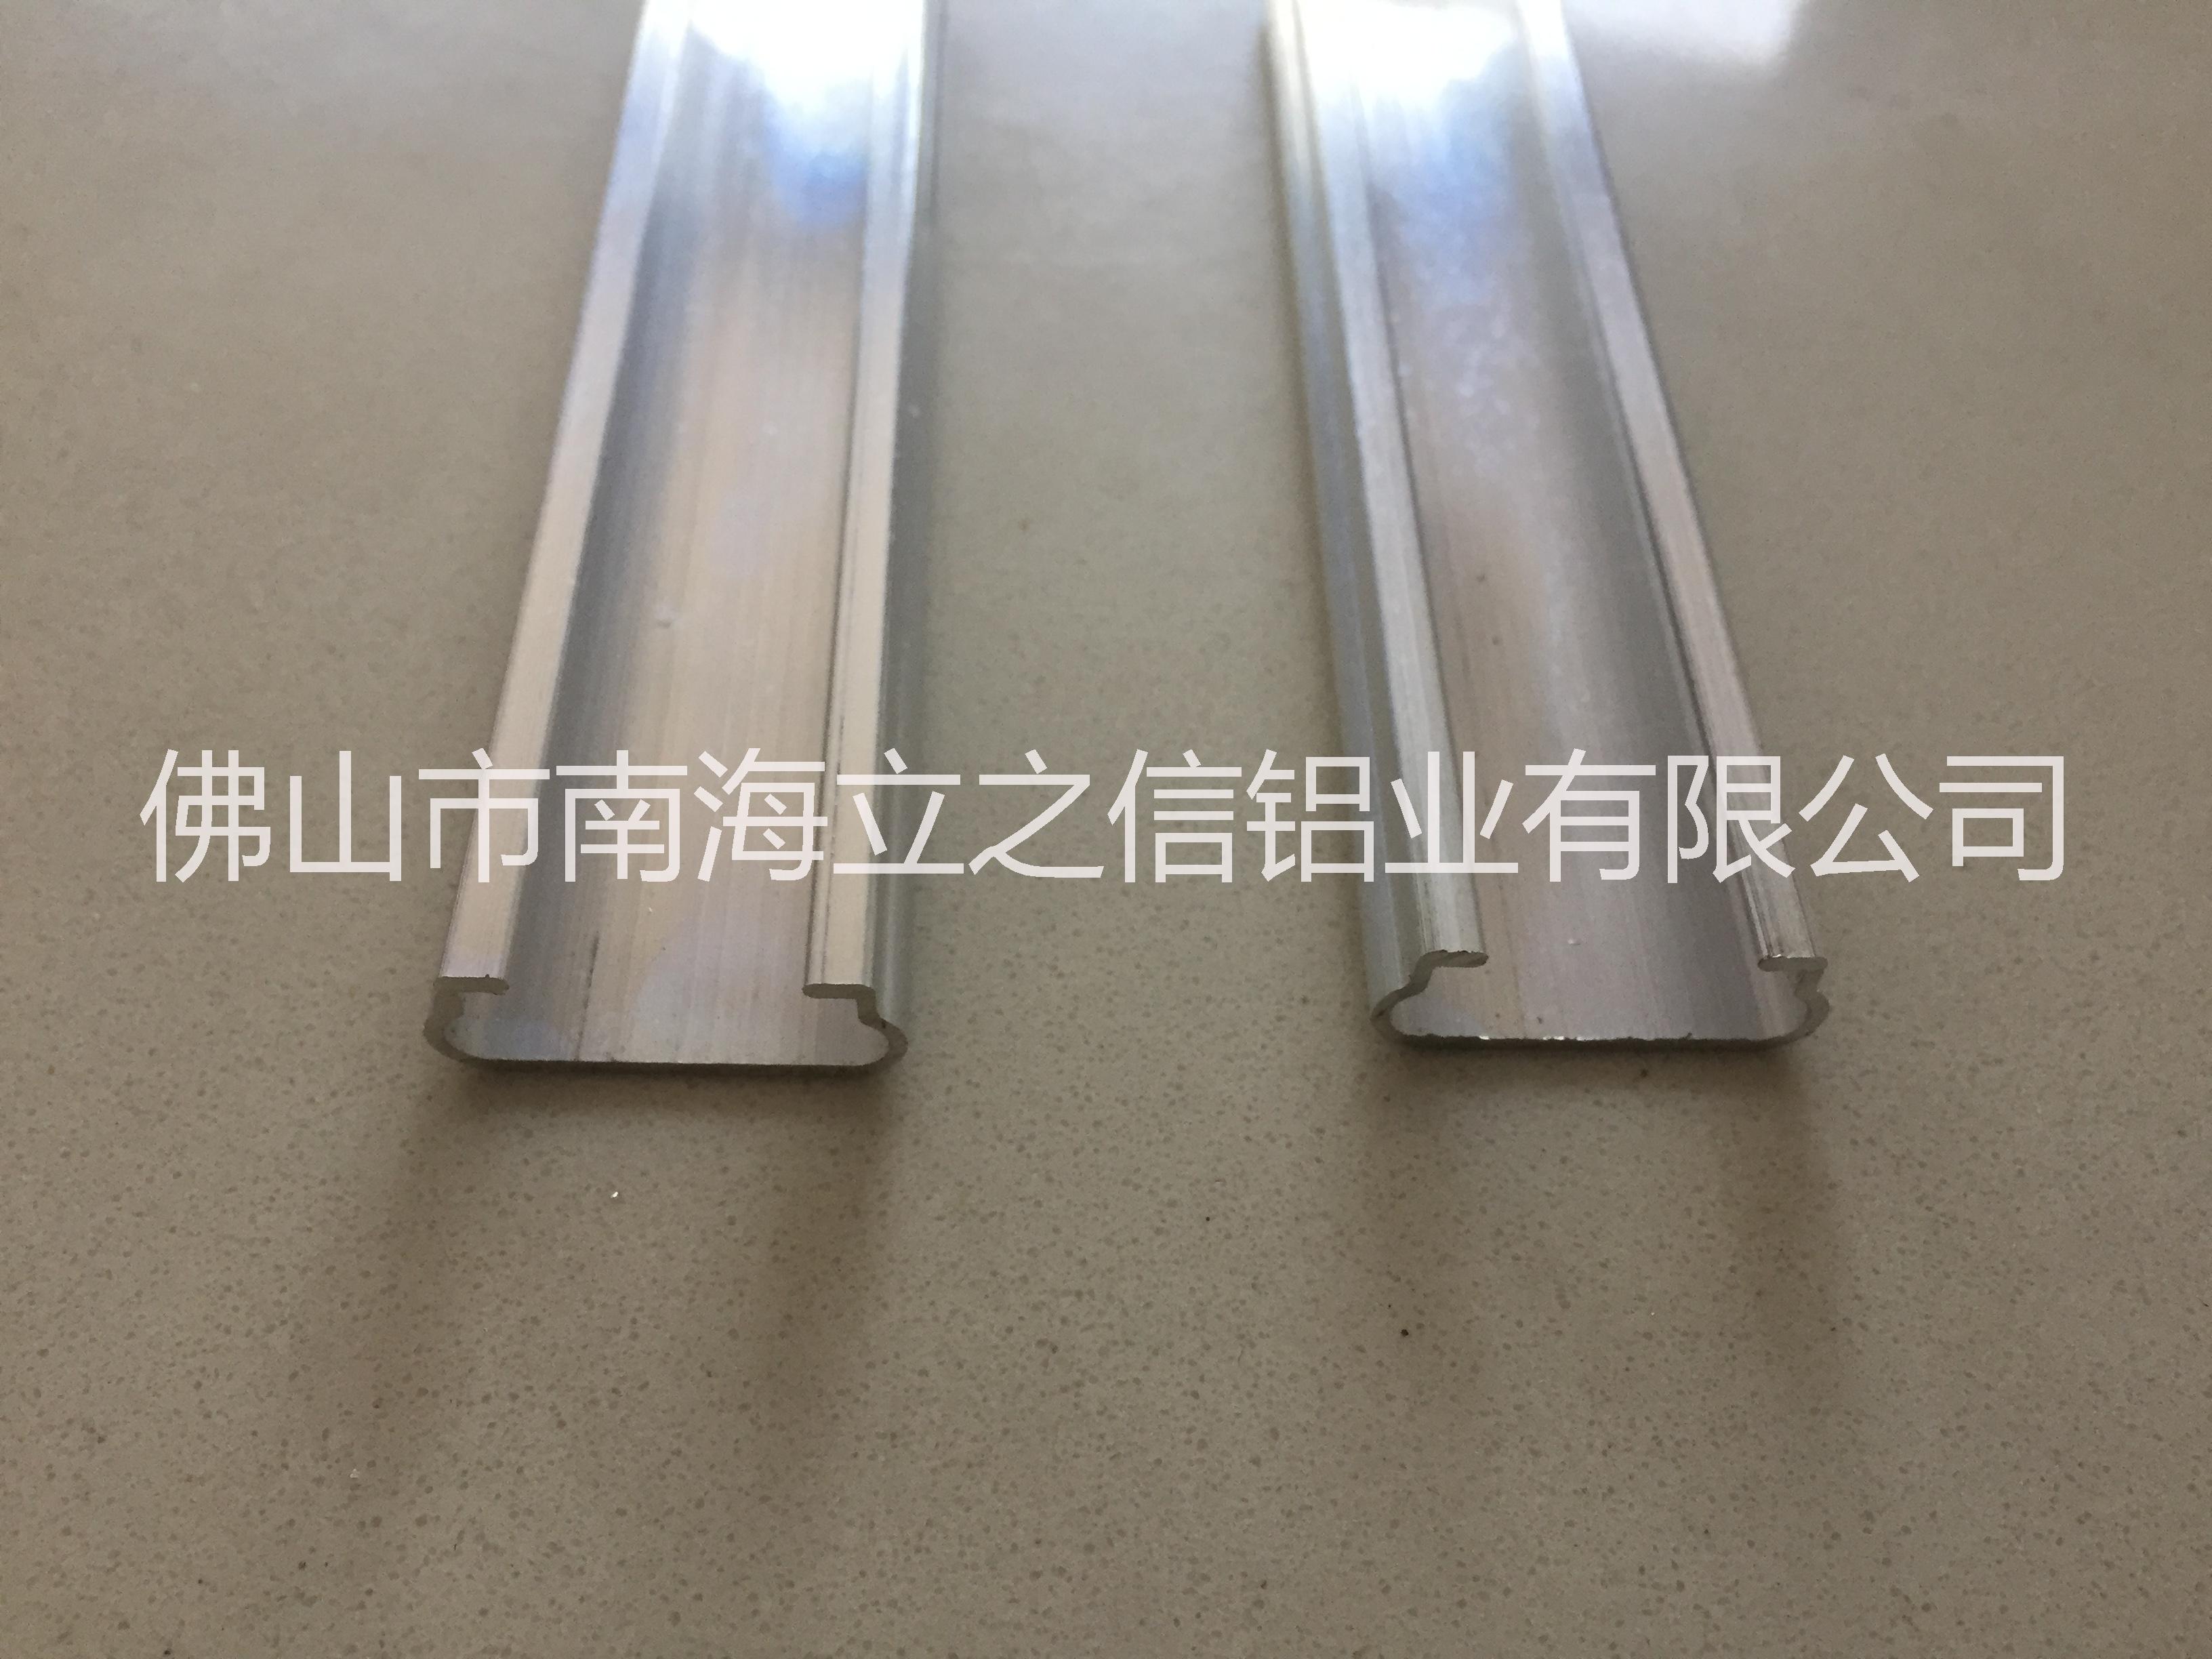 广东广东大鹏卡槽 厂家专业生产大棚 直销铝合金大鹏卡槽厂家 卡槽价格